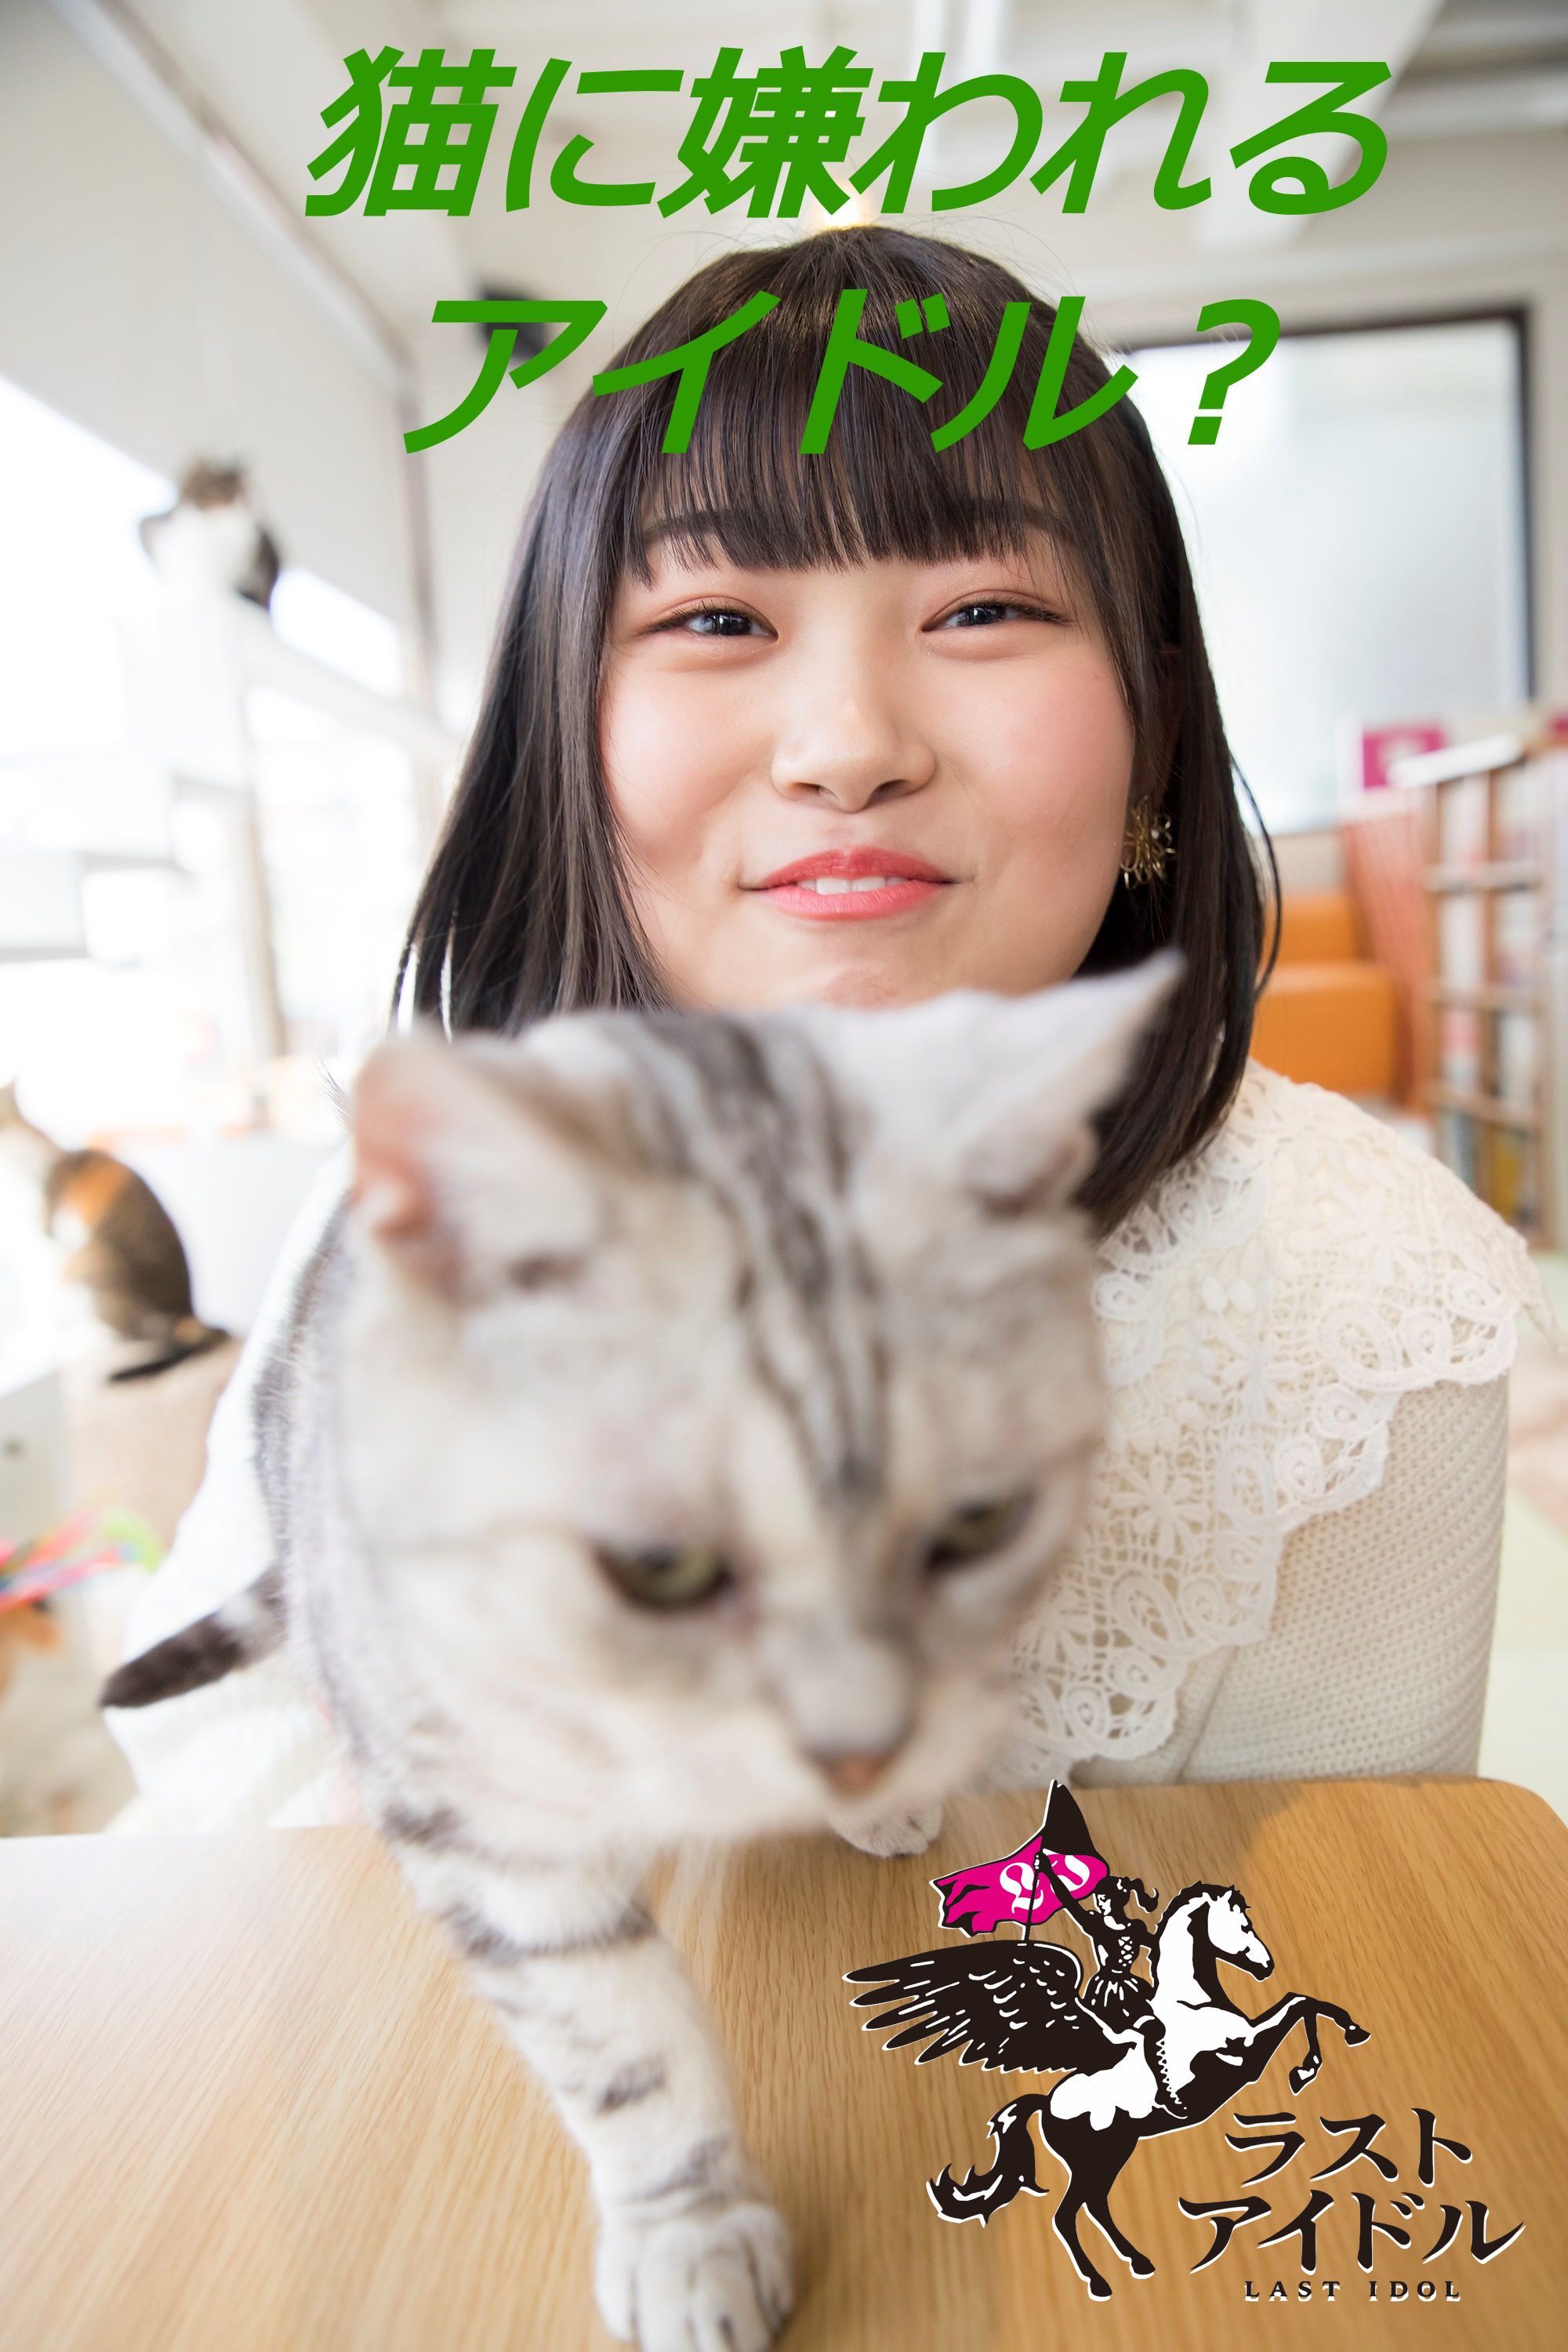 小澤愛実 風船屋さん 猫カフェで愛を知る素敵な出会い 写真57枚 連載 ラストアイドルのすっぴん Vol 18 日刊大衆